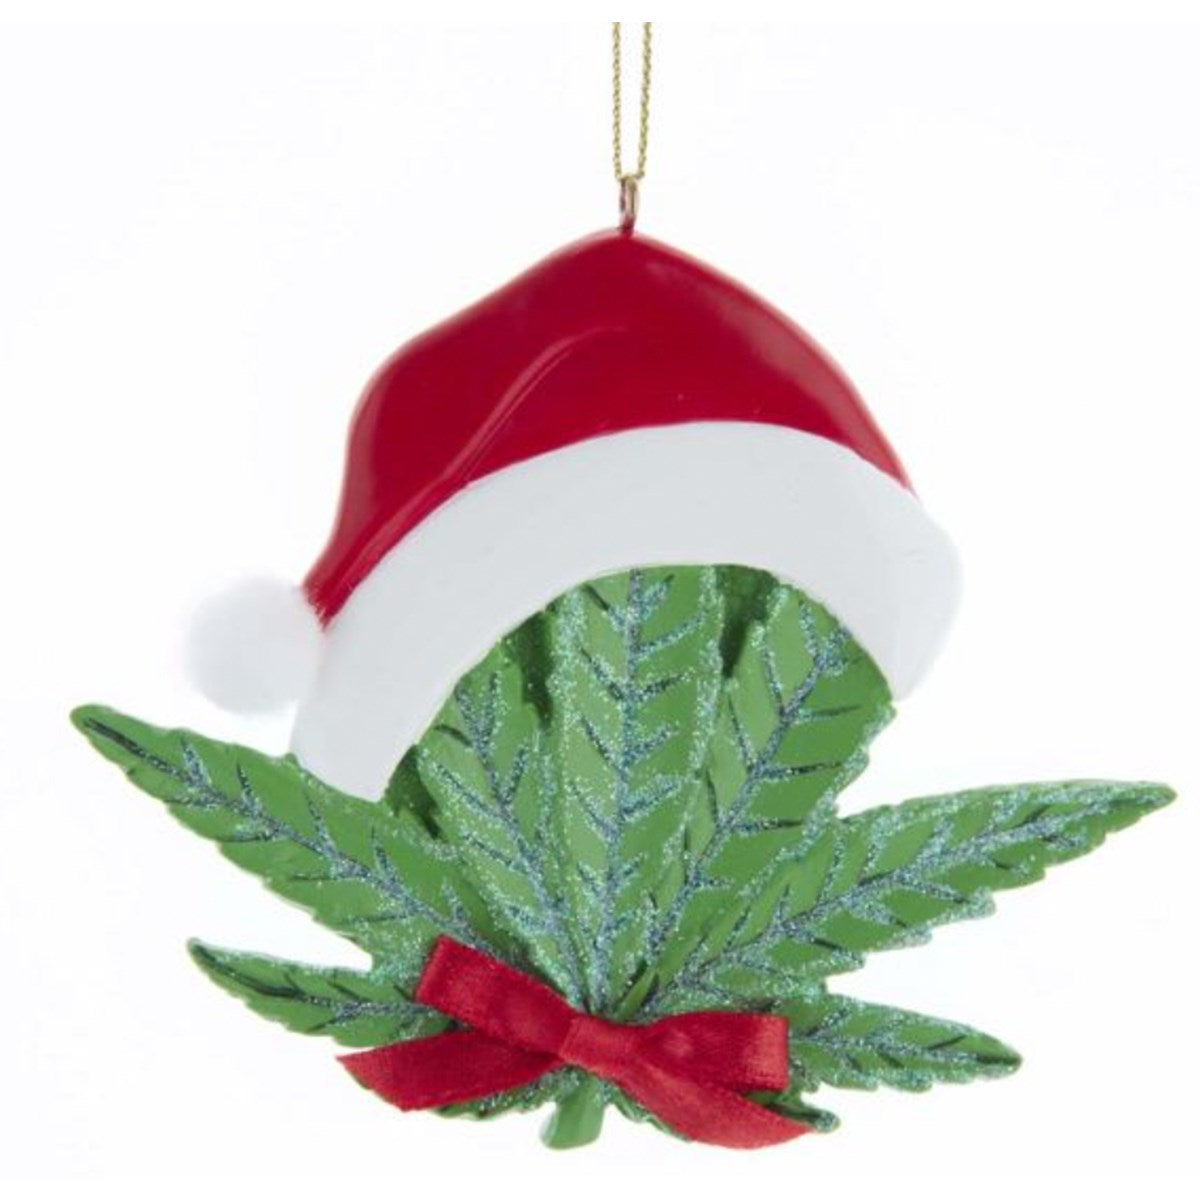 Cannabis Leaf With Santa Hat Ornament